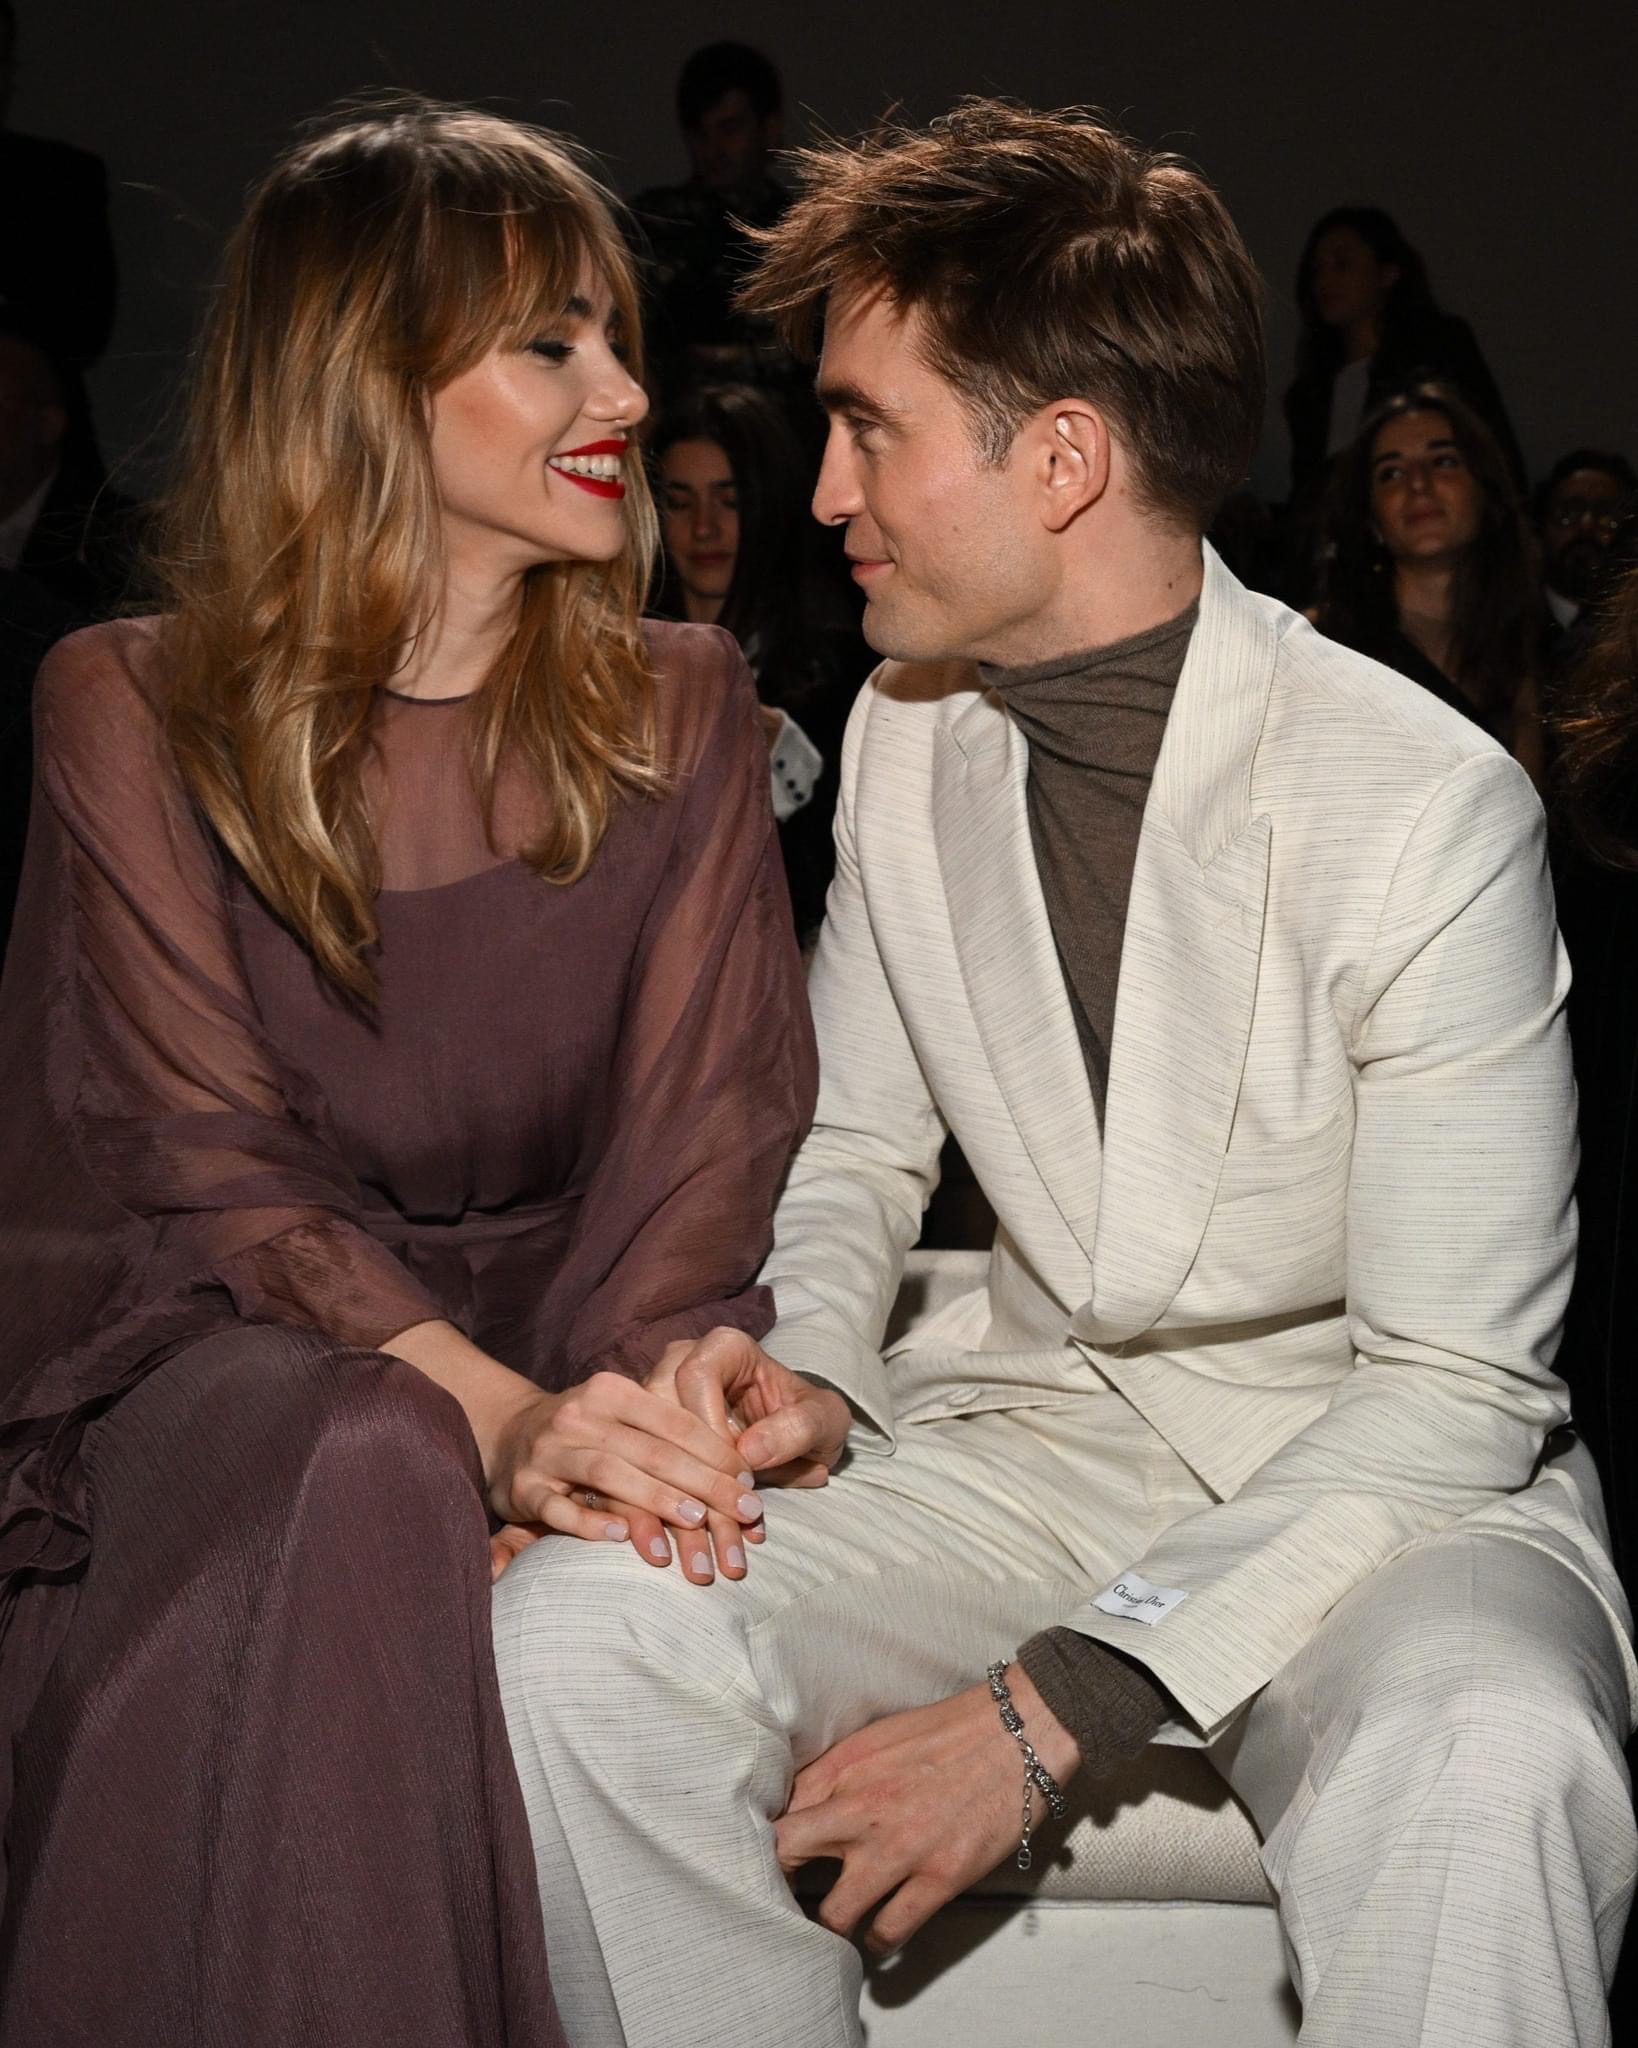 Ma cà rồng Robert Pattinson và bạn gái người mẫu lần đầu công khai lộ diện sau 4 năm yêu, visual cả đôi gây xôn xao - Ảnh 3.